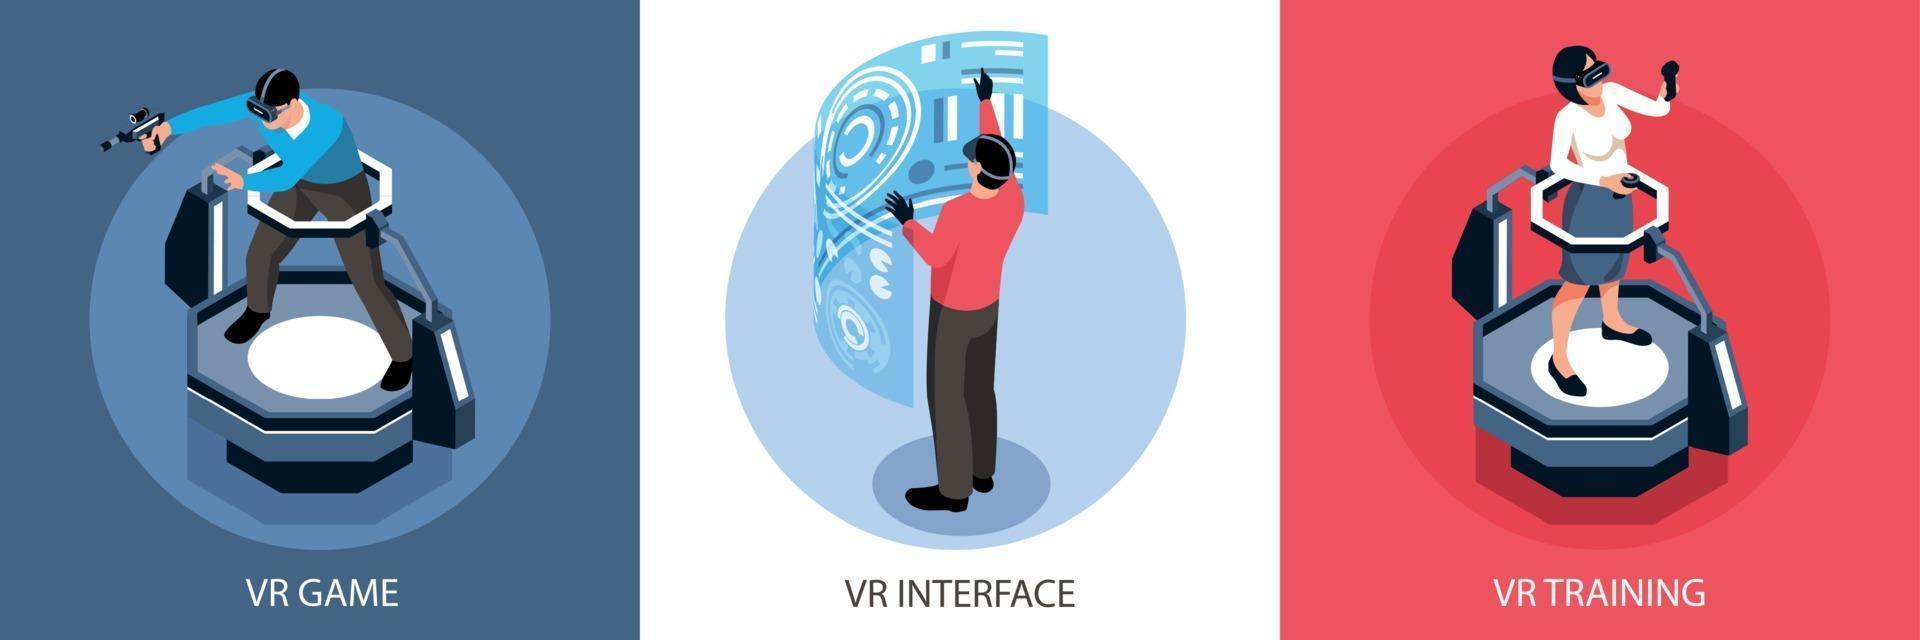 isometrisches Designkonzept der virtuellen Realität vektor